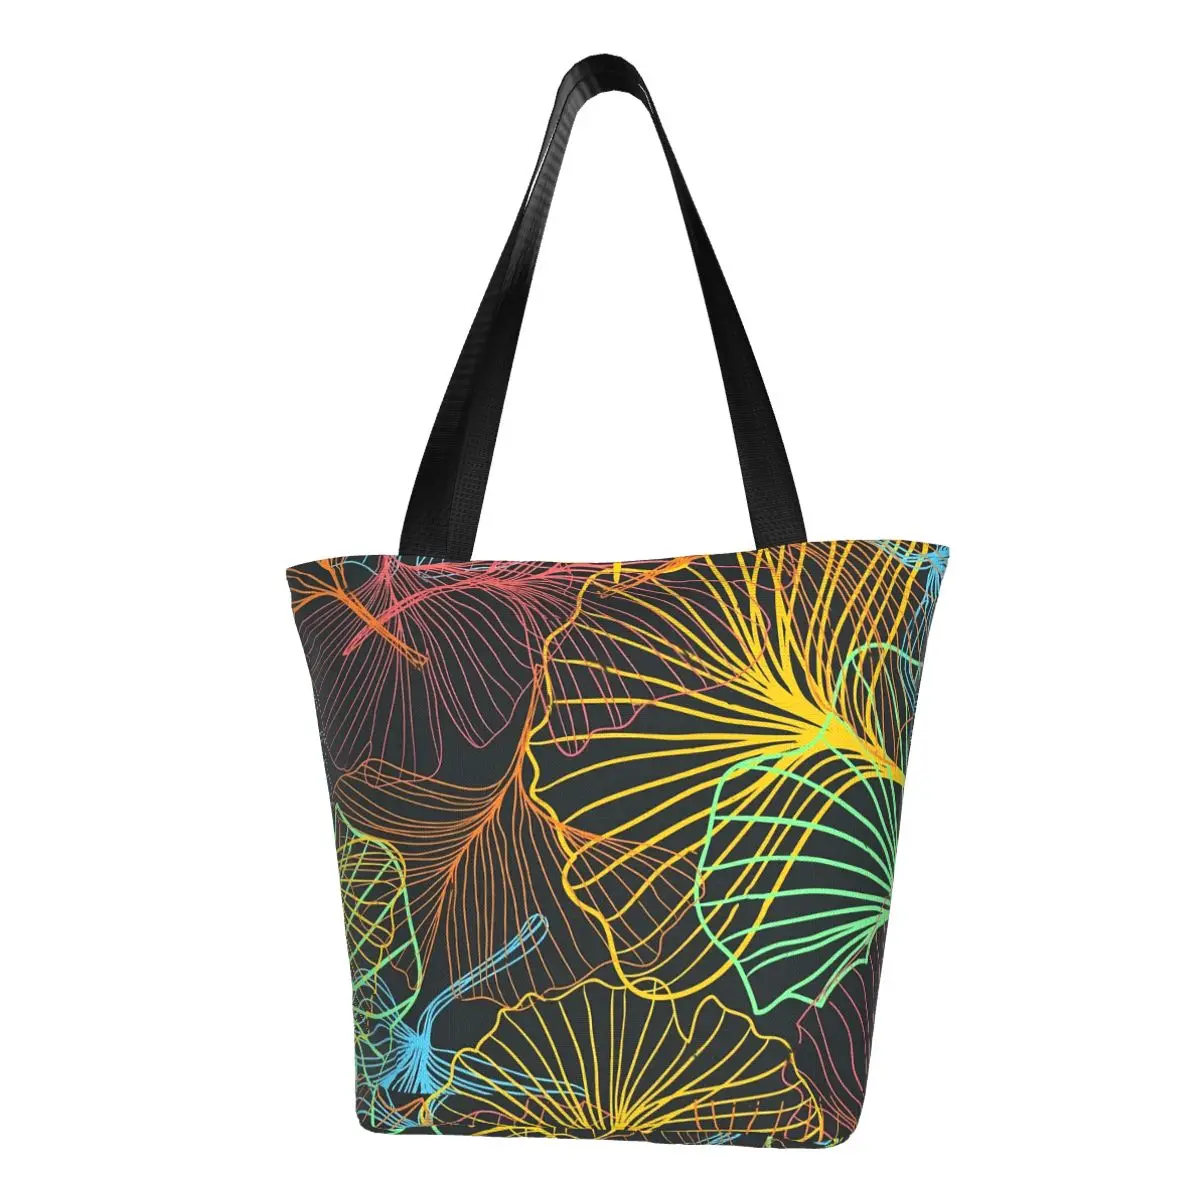 

Цветная сумка для покупок Ginkgo Biloba, сумки для покупок с супер принтом листьев, Студенческая пляжная тканевая сумка-тоут, винтажные сумки с графическим дизайном